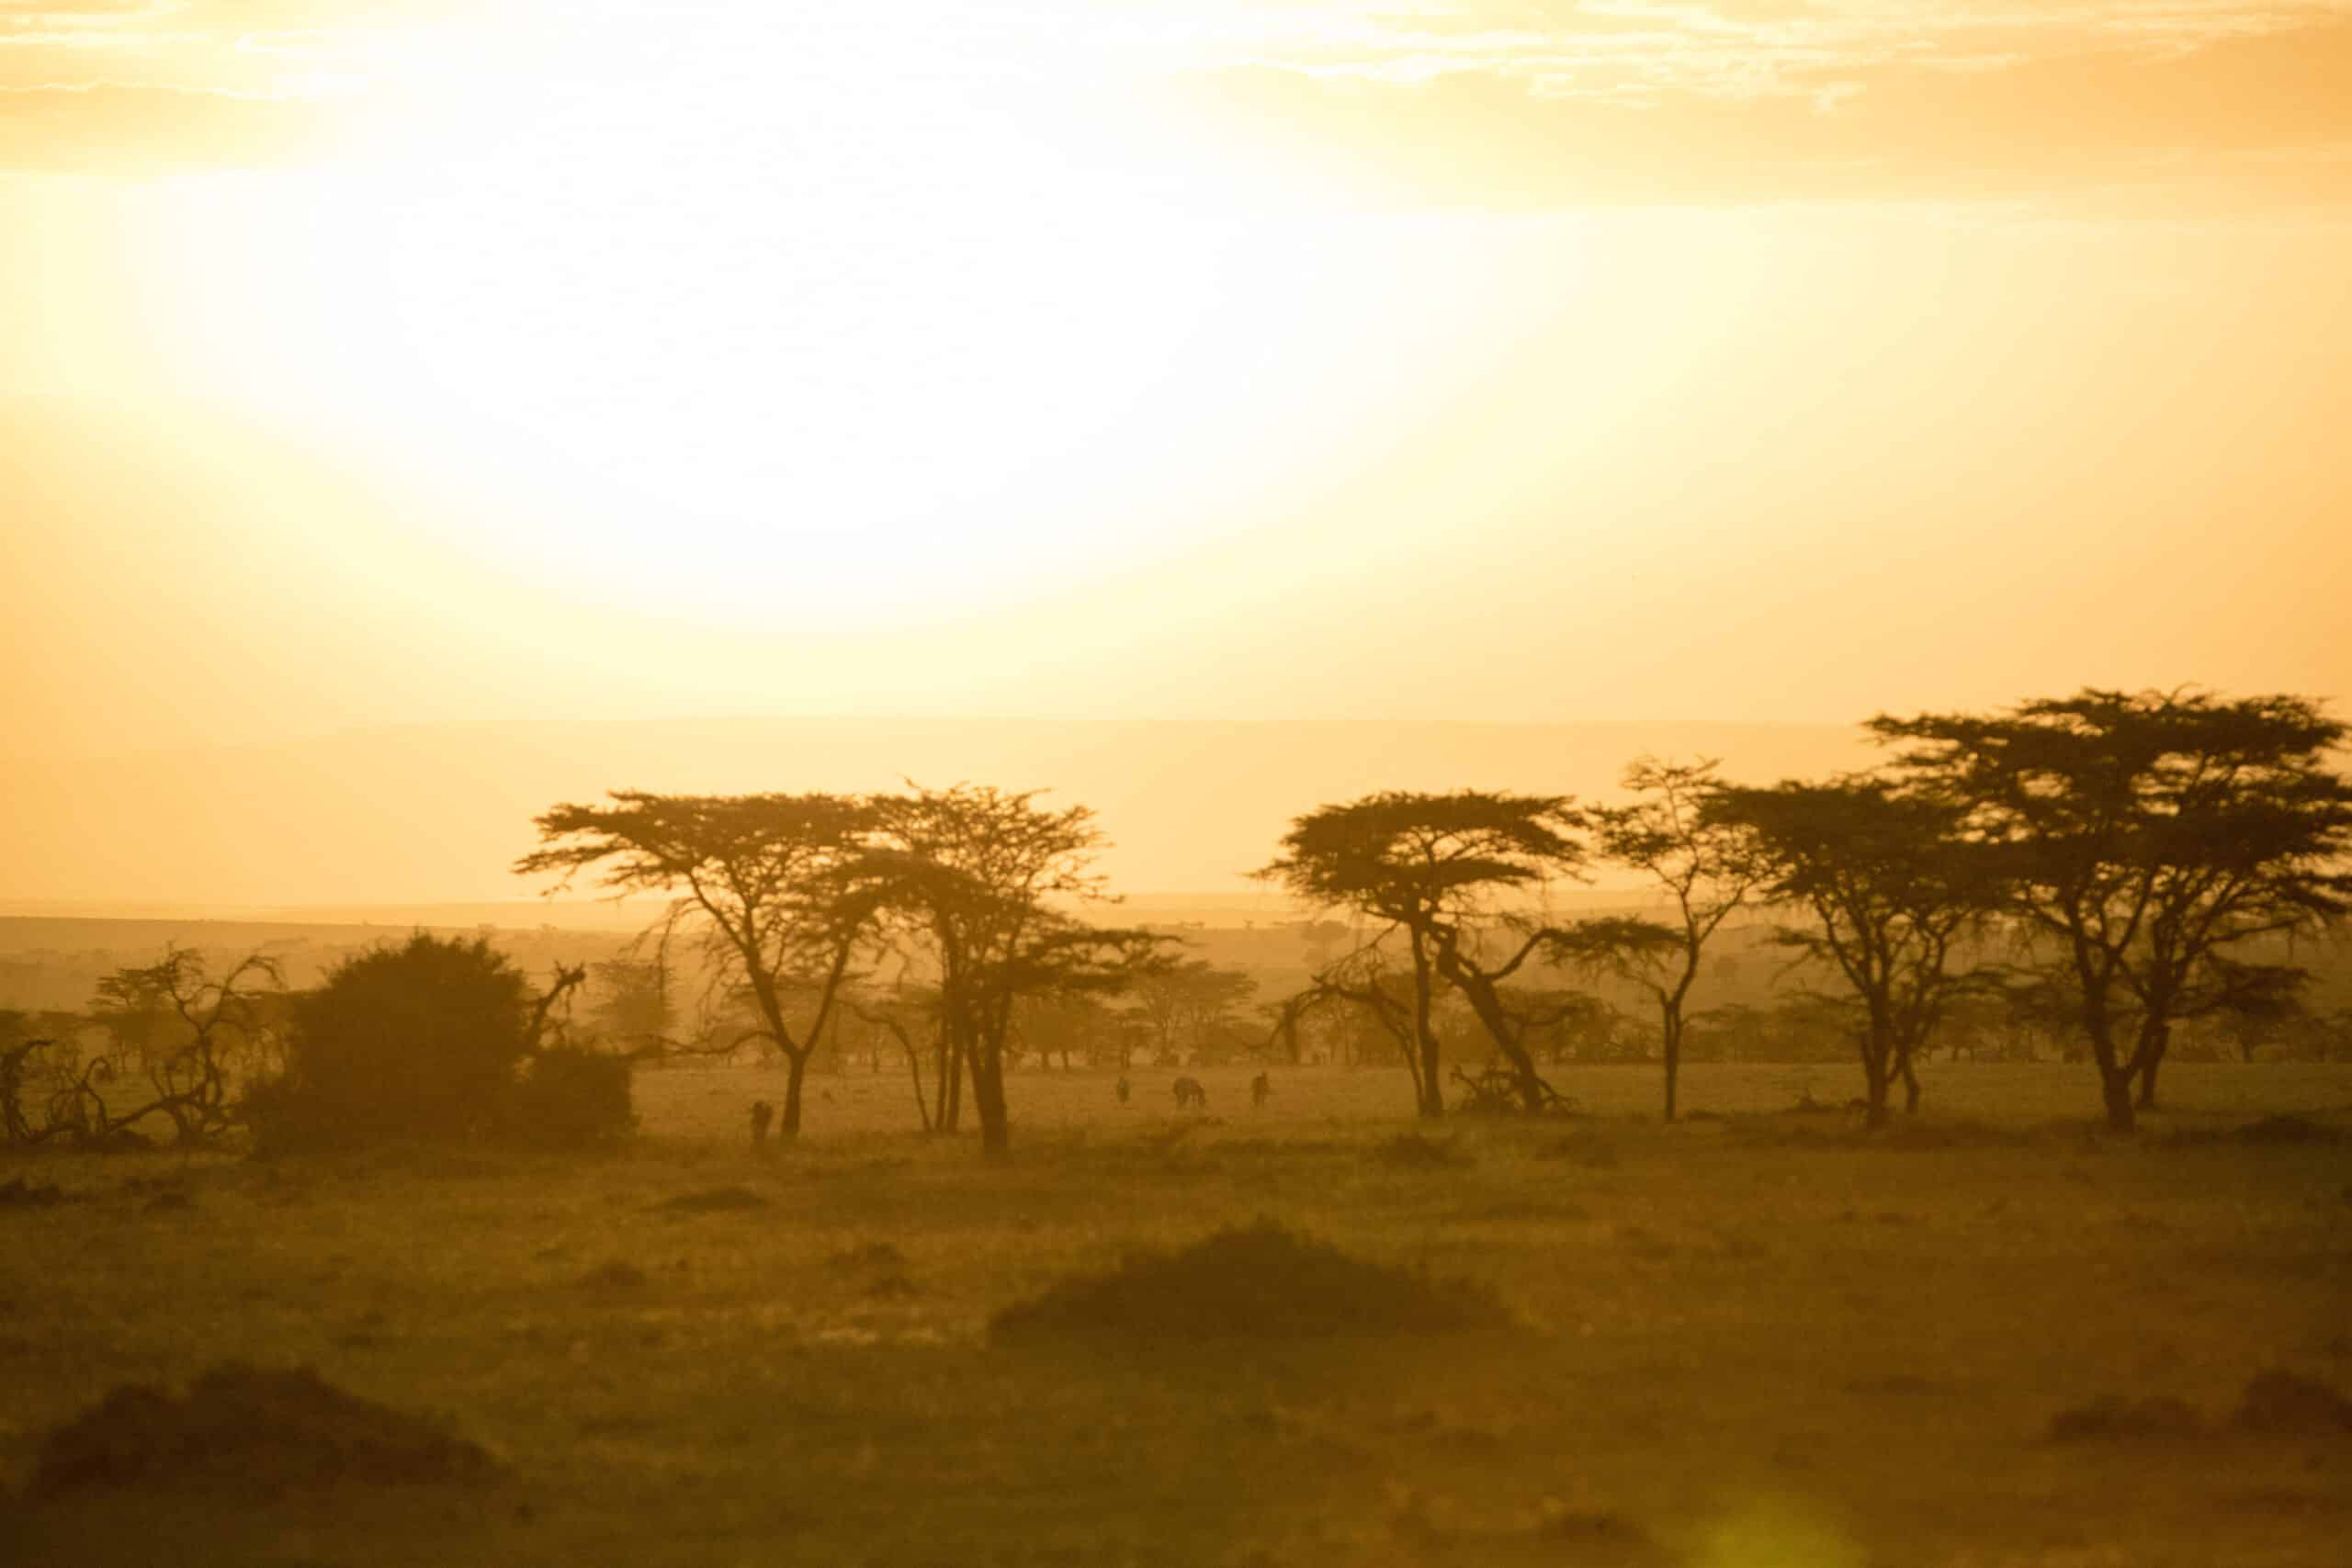 Ein ruhiger Sonnenuntergang wirft einen goldenen Schimmer über die Savanne und hebt die Silhouetten der Akazienbäume vor einem dunstigen Himmel hervor. © Fotografie Tomas Rodriguez